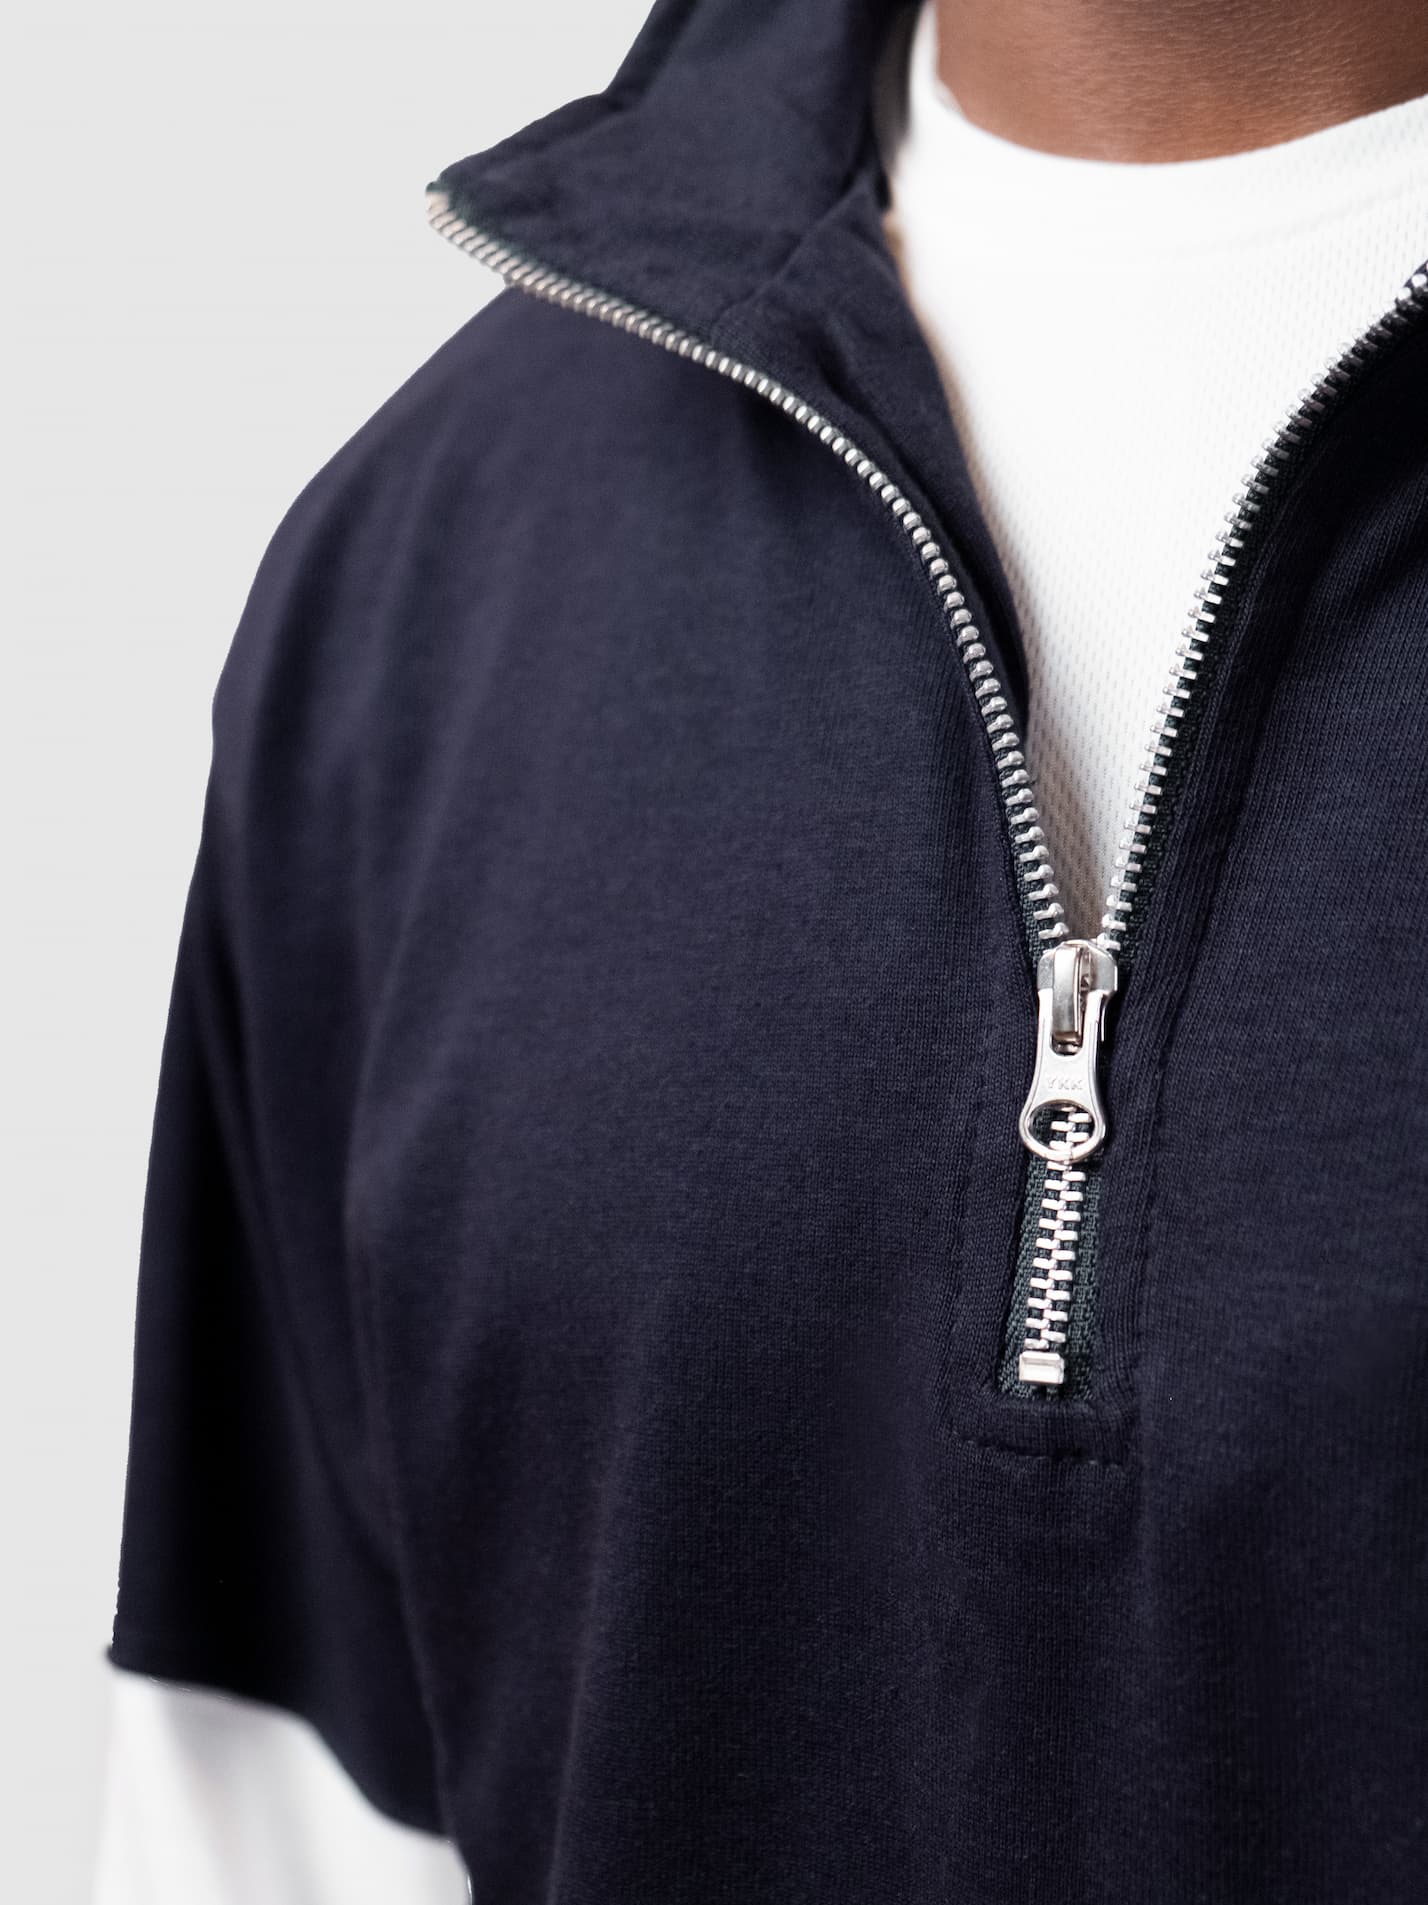 Grey College Durham Unisex Panelled 1/4 Zip Sweatshirt